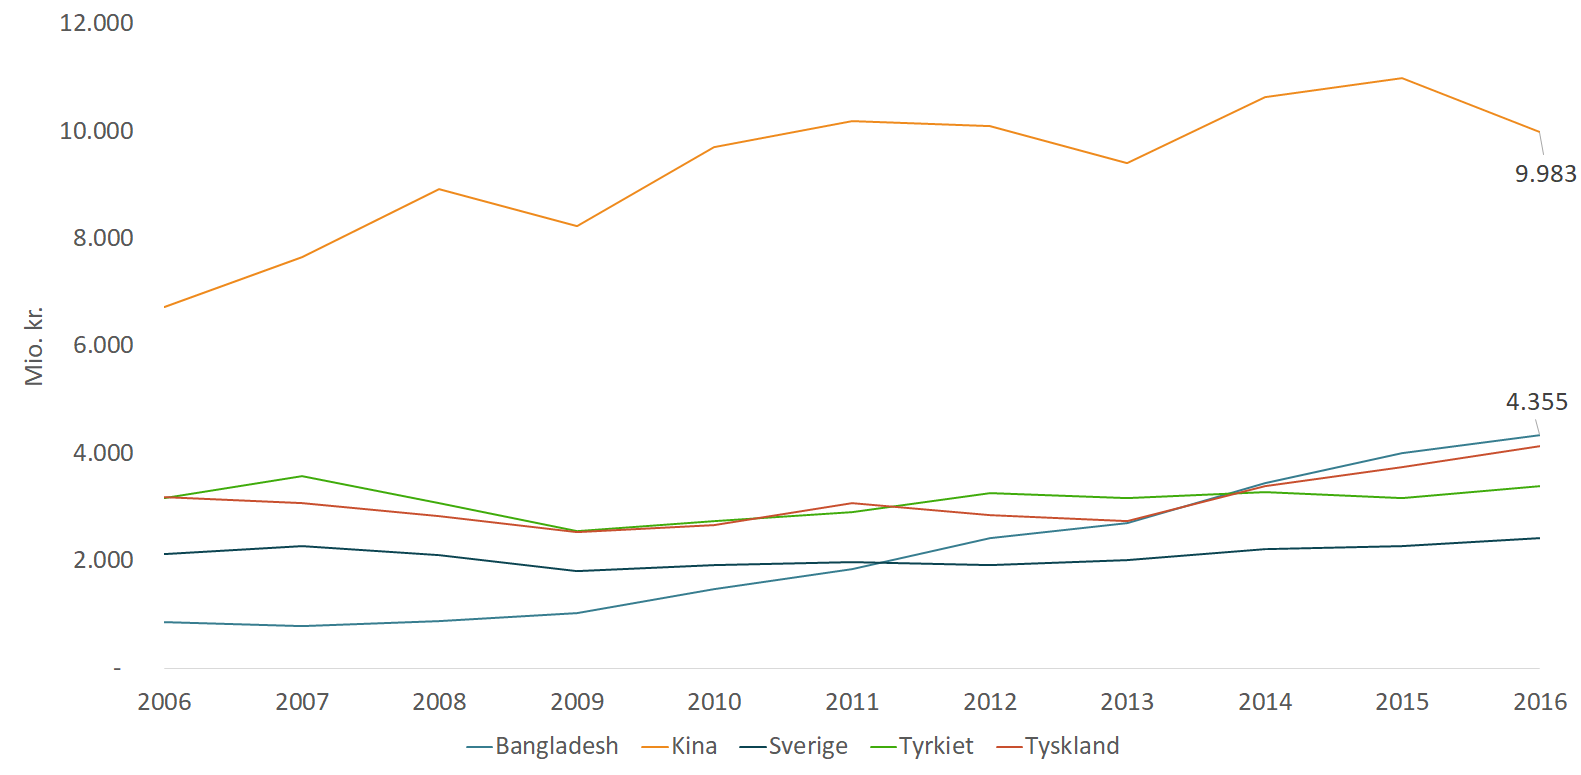 Figur 1: Top 5 lande over Danmarks import af tekstil- og beklædningsvarer, 2006-2016